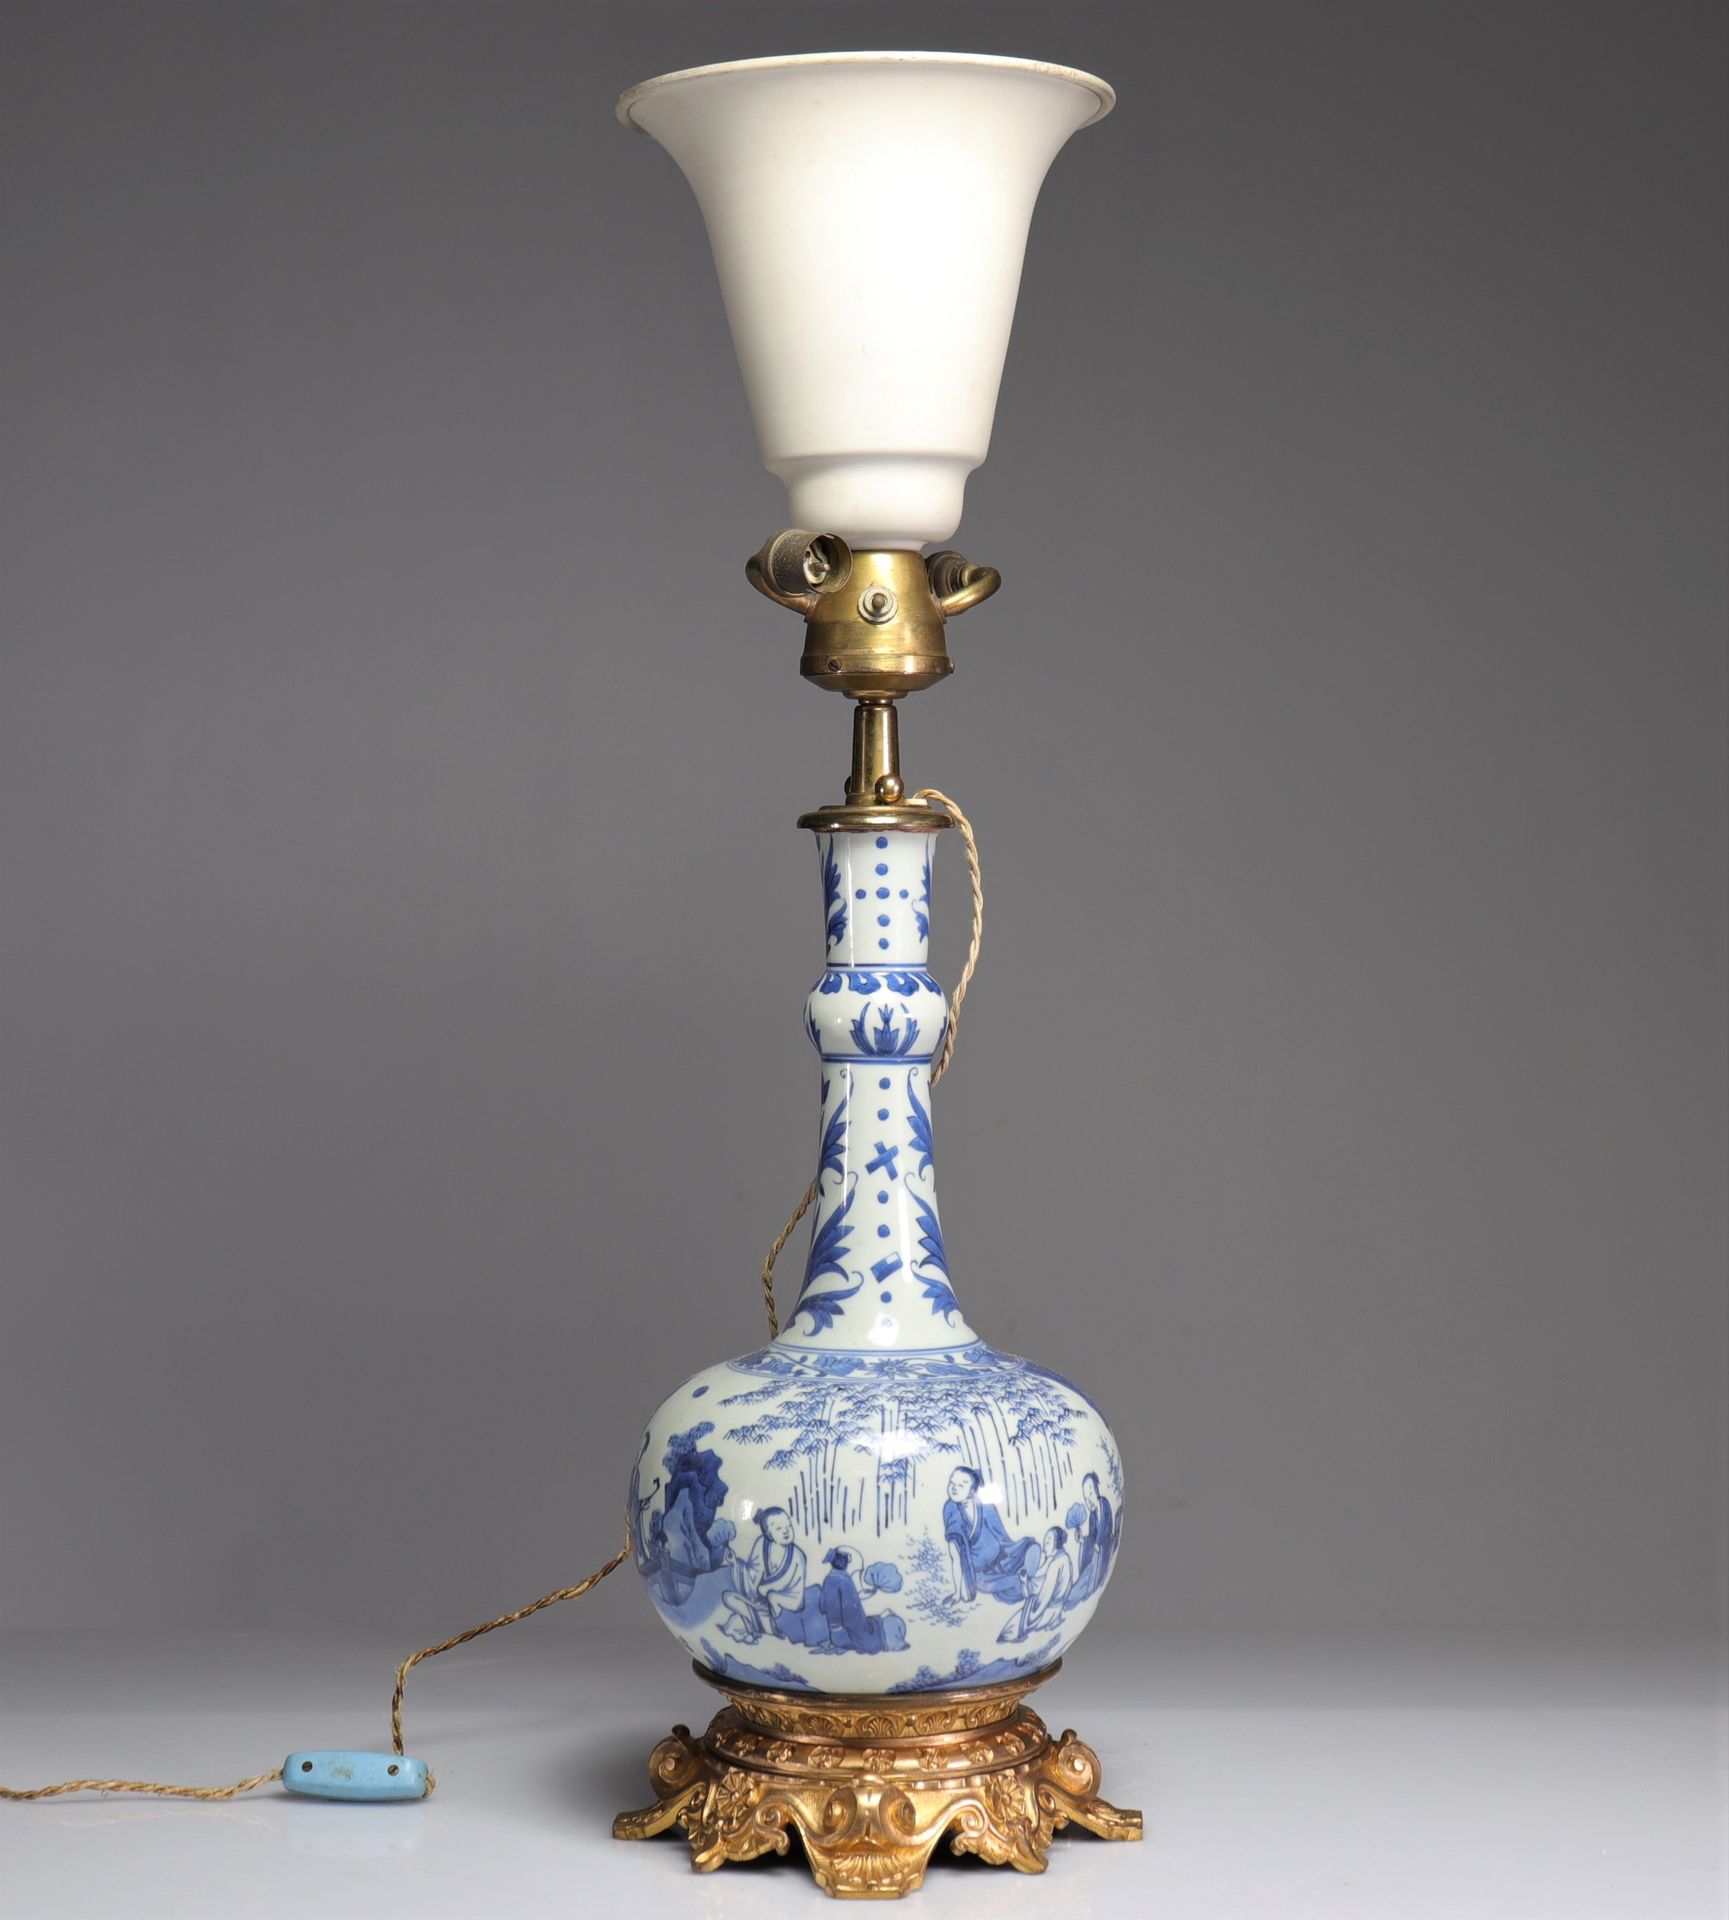 Null lampada in porcellana bianco-blu, periodo di transizione
Peso: 4,90 kg
Regi&hellip;